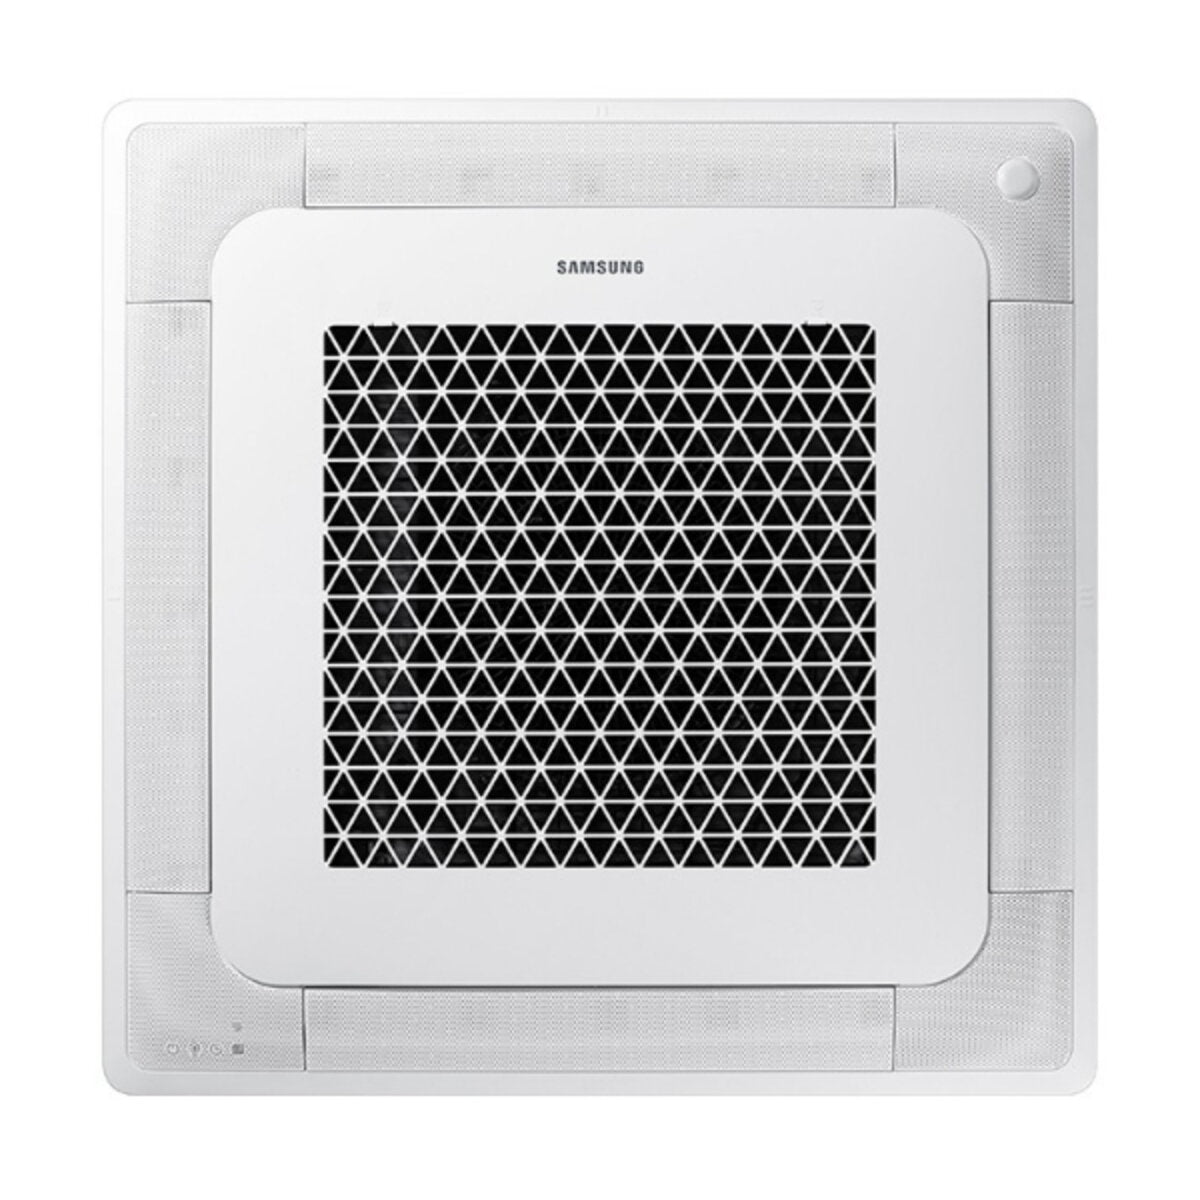 Samsung Klimaanlage Windfree 4-Wege Dual Split 18000 + 18000 BTU Inverter A++ Außengerät 8,0 kW